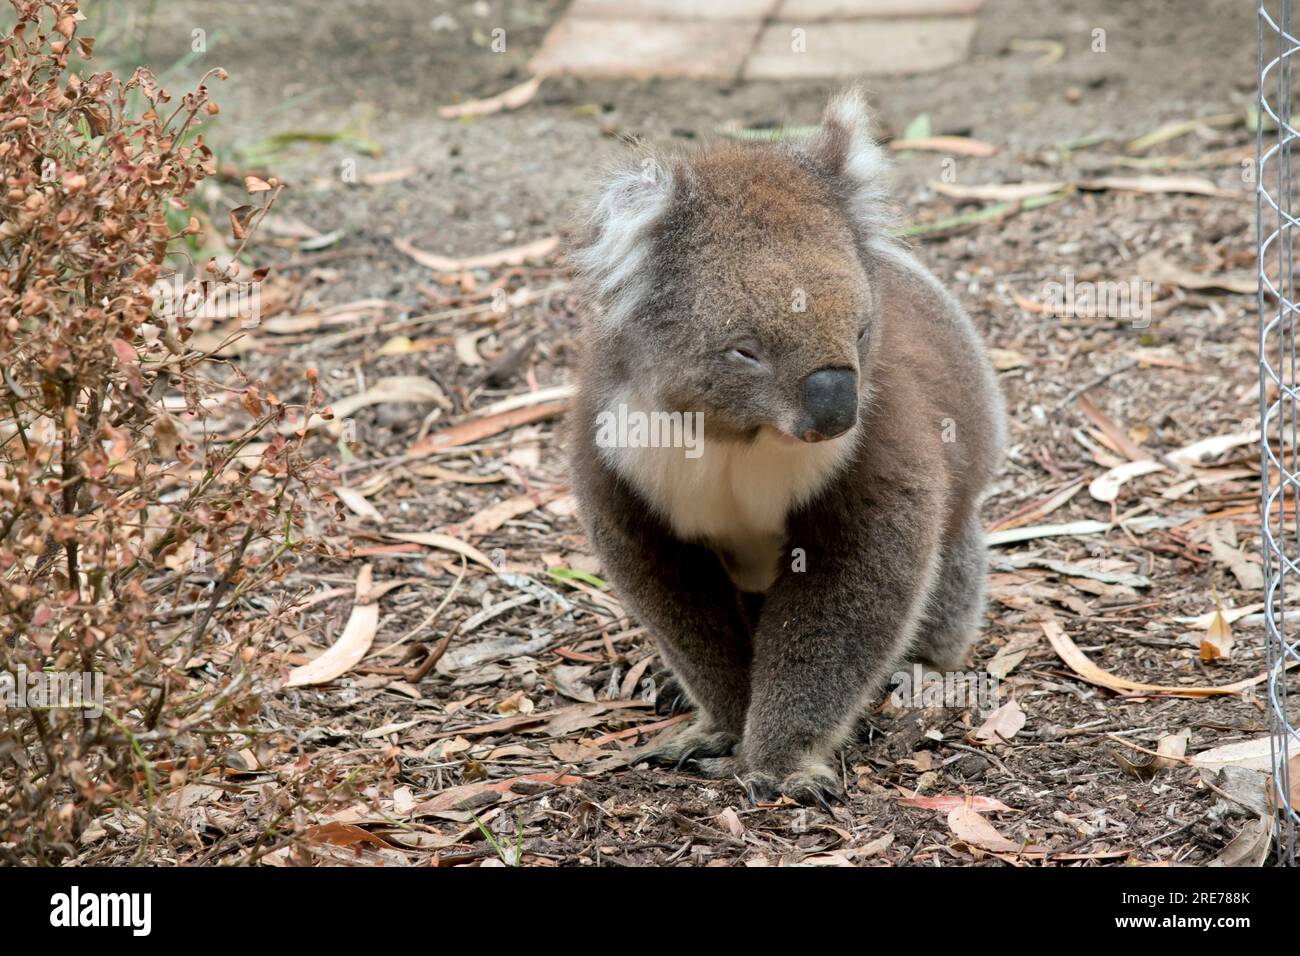 Le Koala a une grande tête ronde, de grandes oreilles en fourrure et un gros nez noir. Banque D'Images